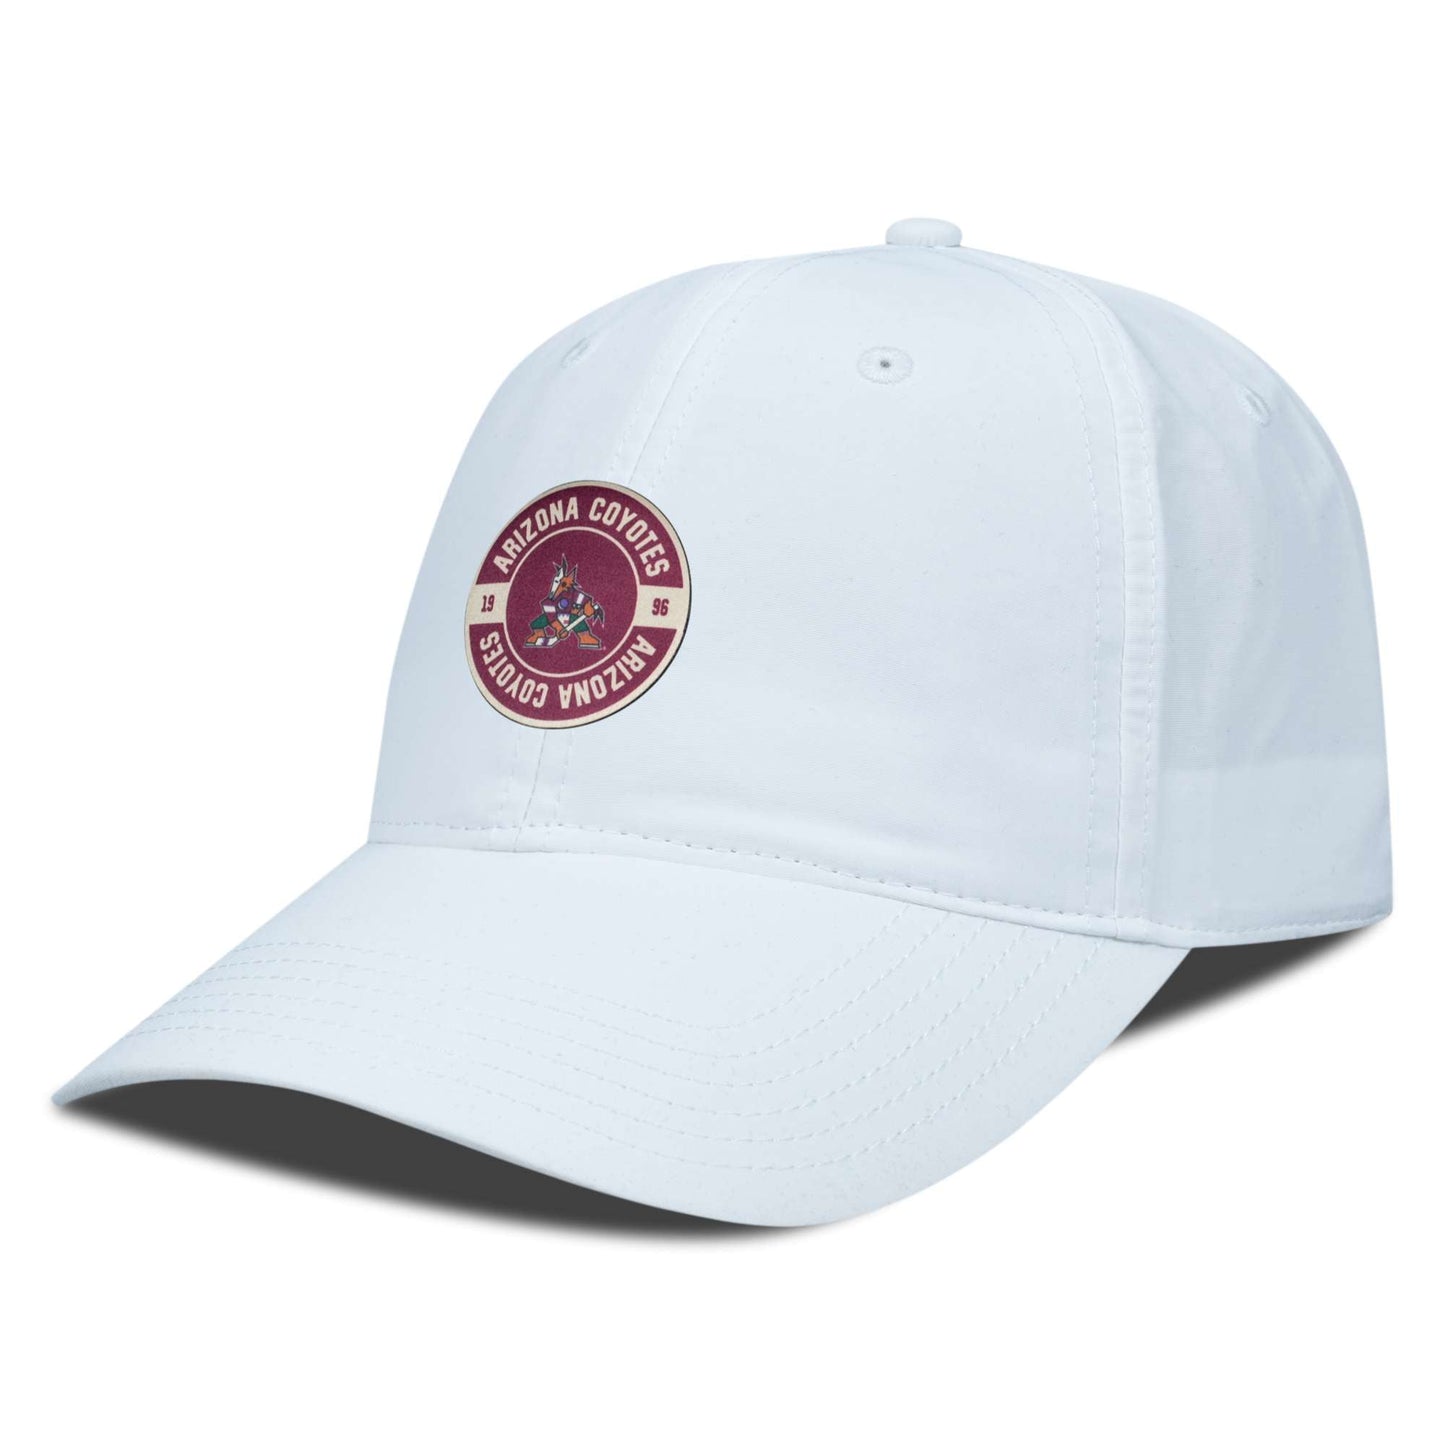 Men's Levelwear White Arizona Coyotes Crest Adjustable Hat - OSFA